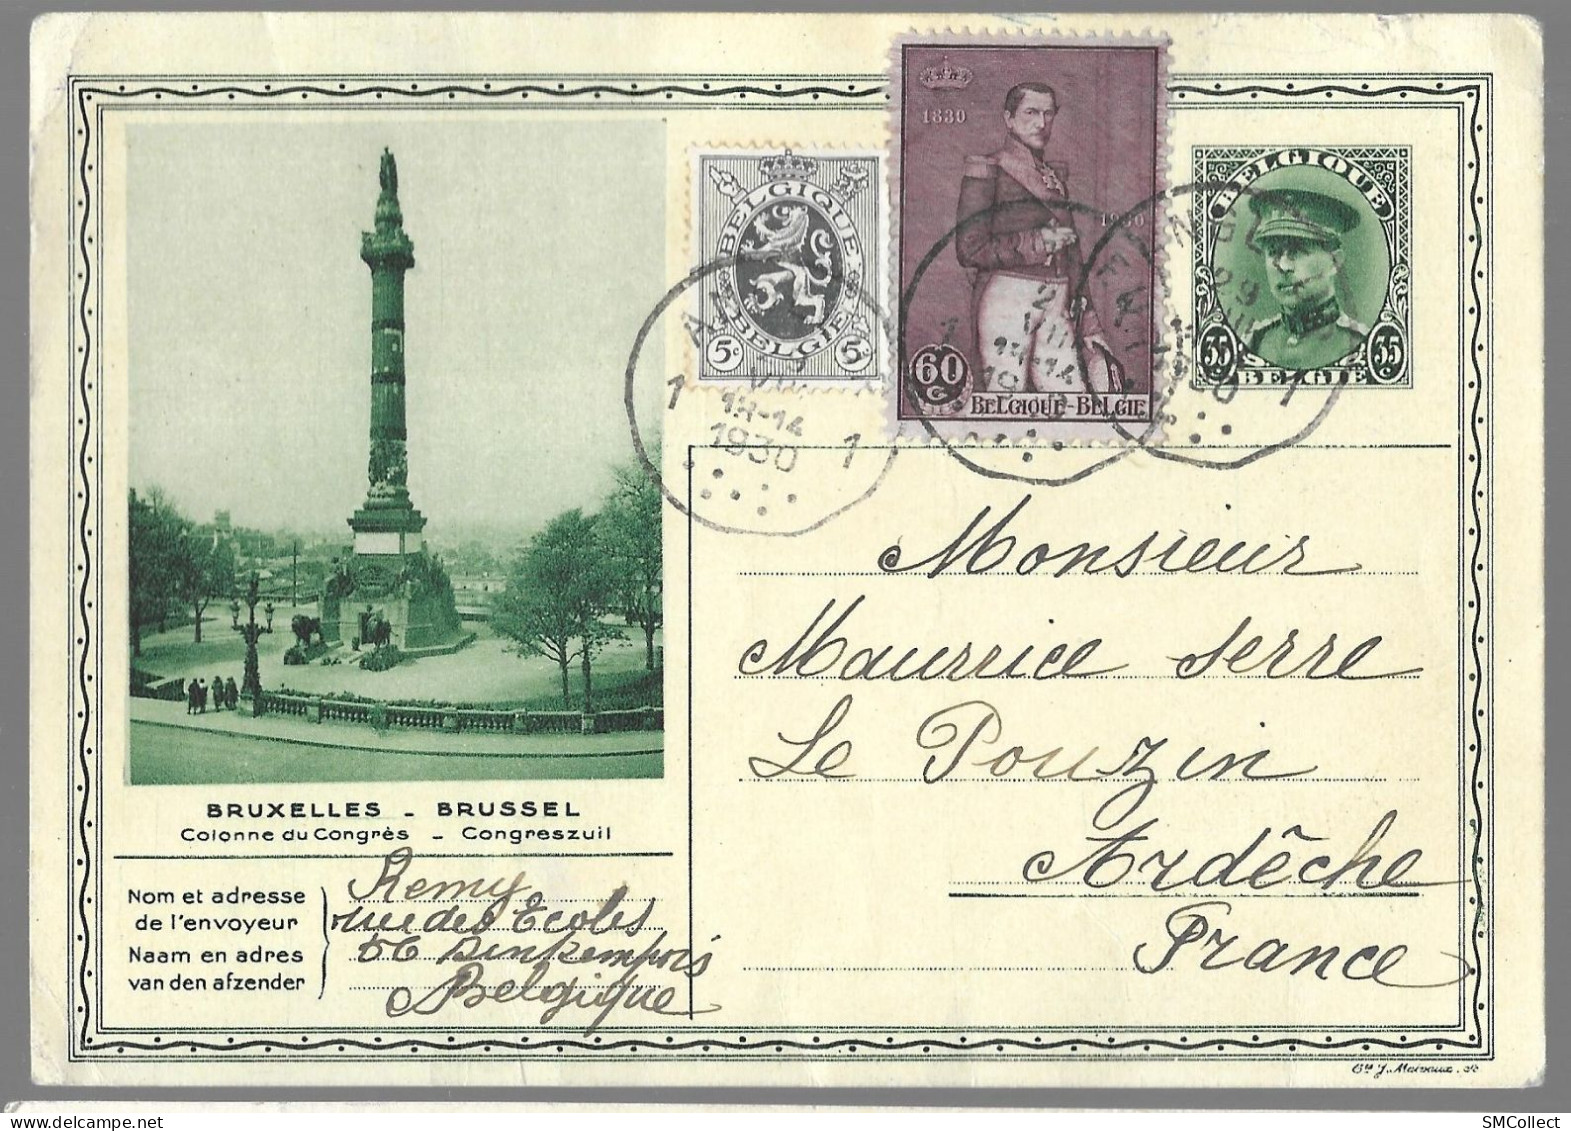 Belgique, Entier Postal "colonne Du Congrès" 35 Centimes + Complément De 65 Centimes (étranger) TAD 1930 (GF3919) - Postcards 1909-1934